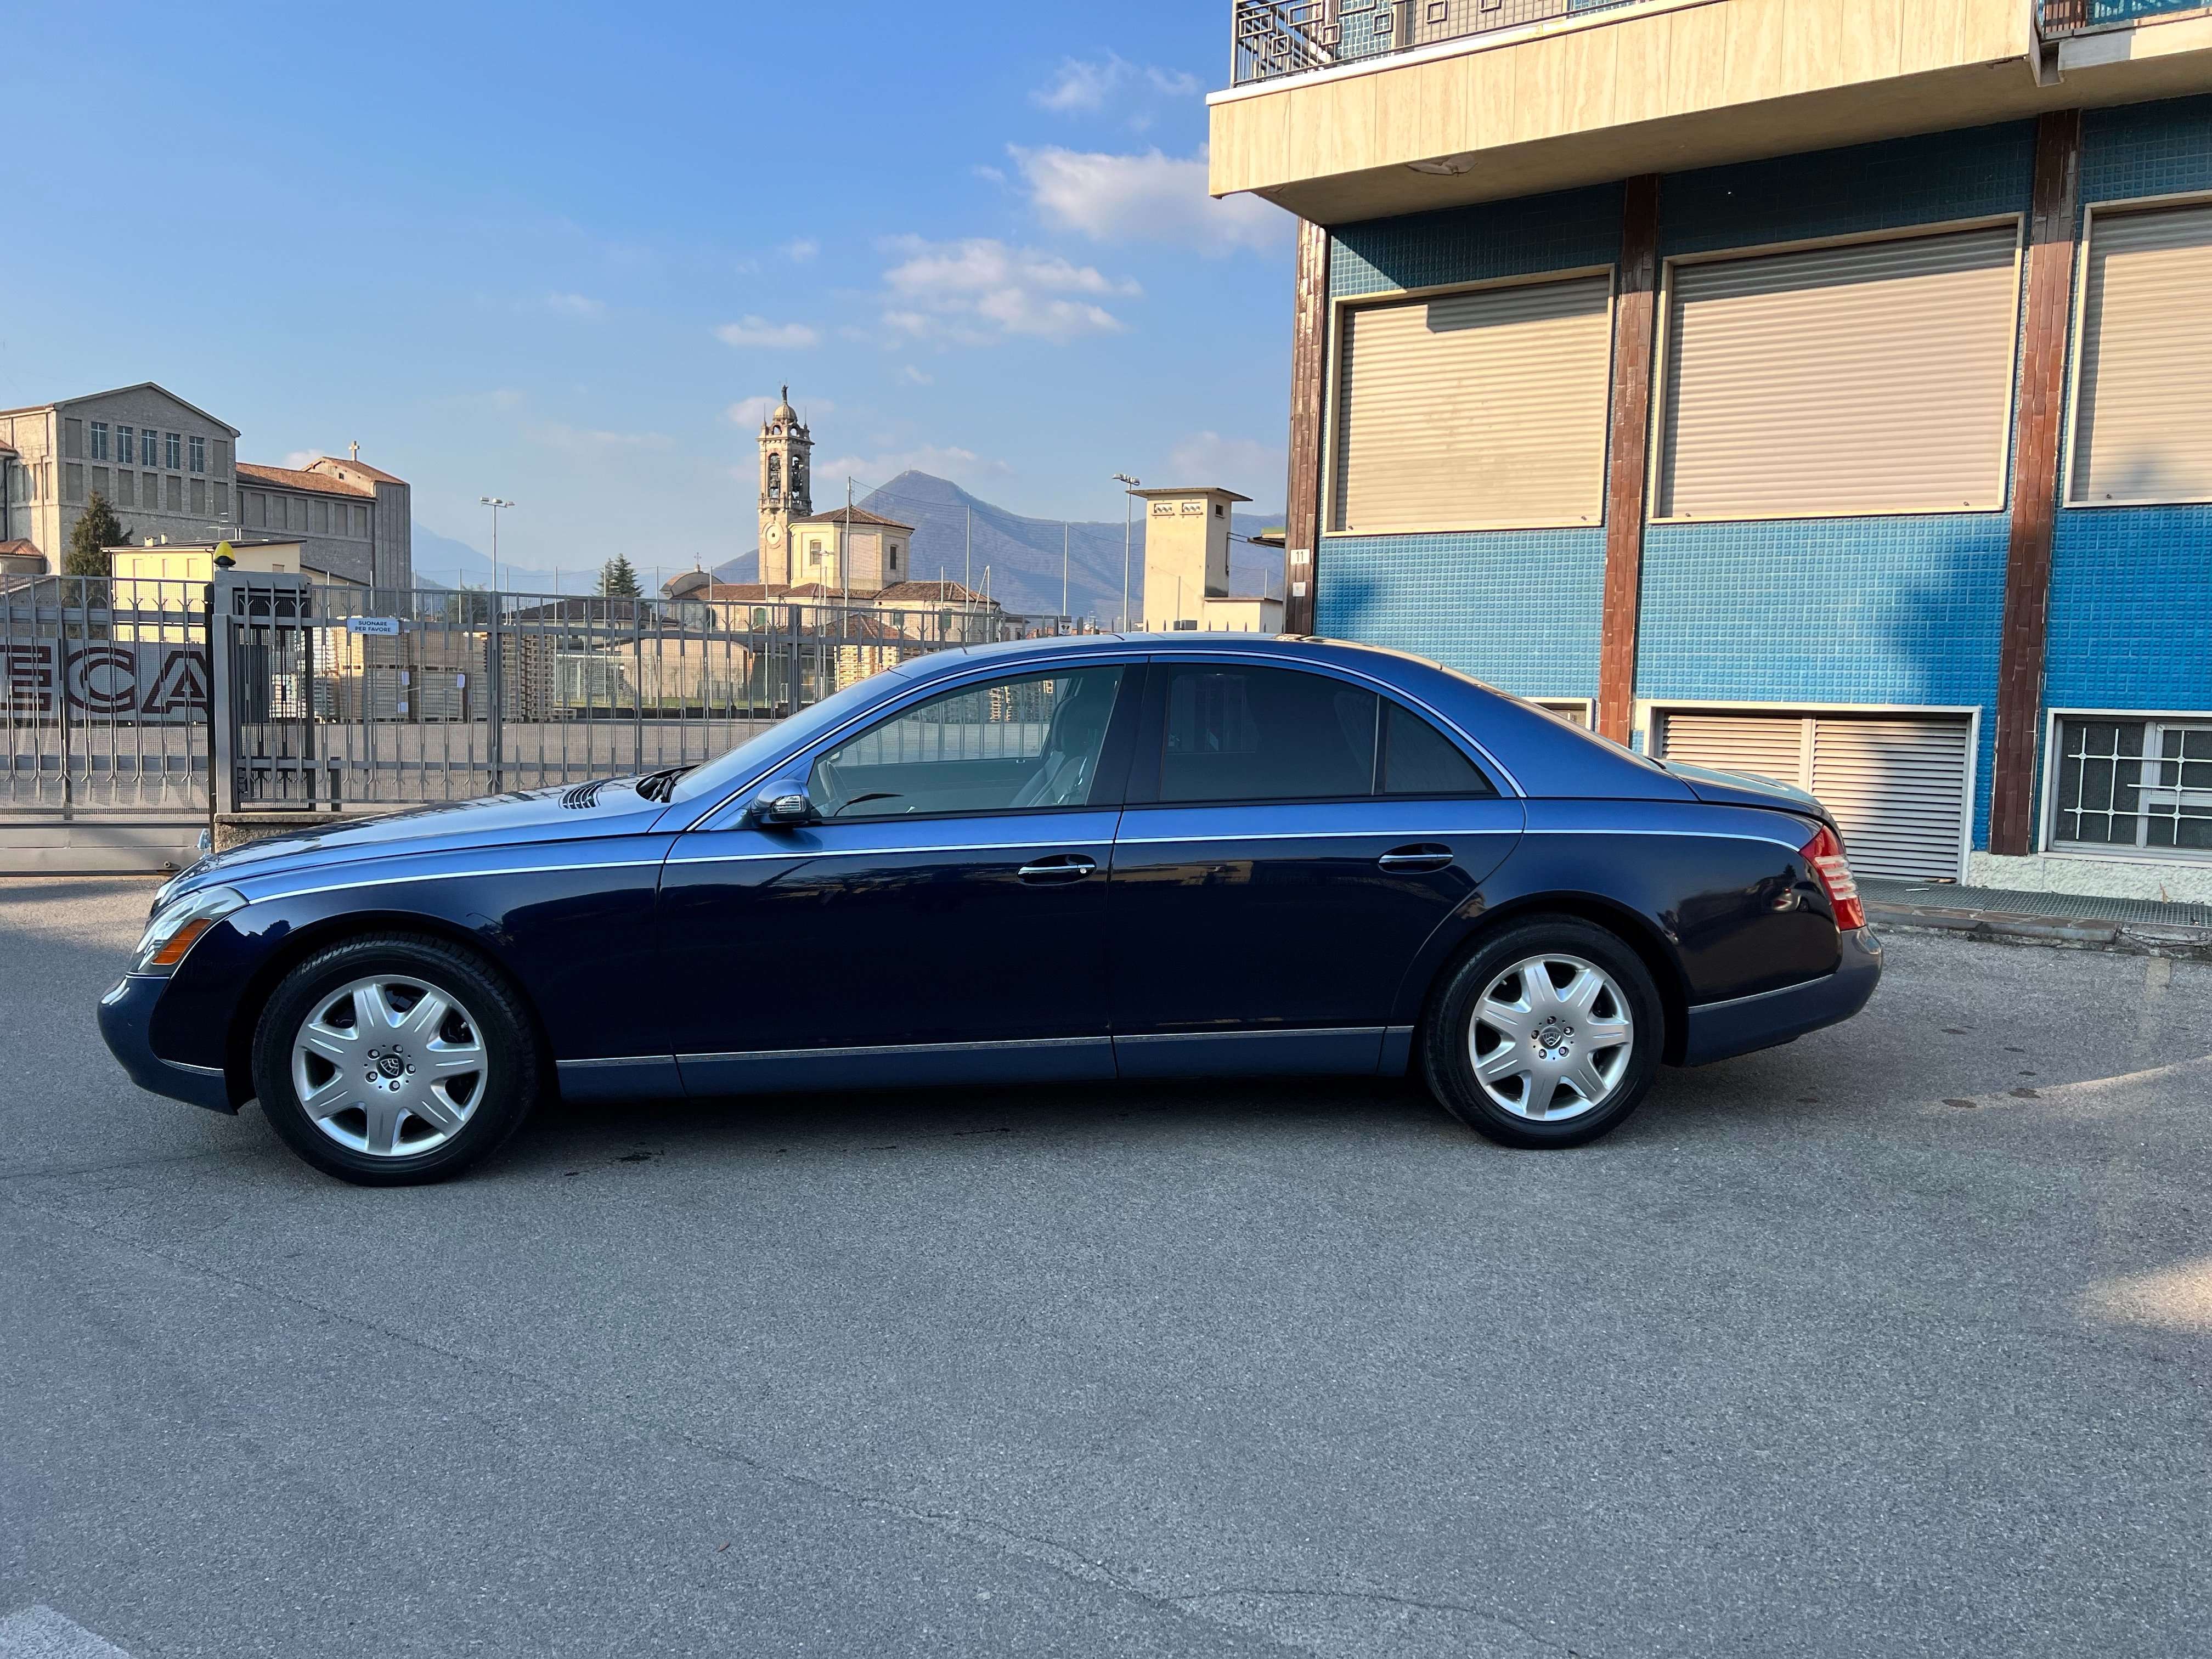 Maybach 57 Sedan in Blue used in Alme - Bergamo for € 143,000.-